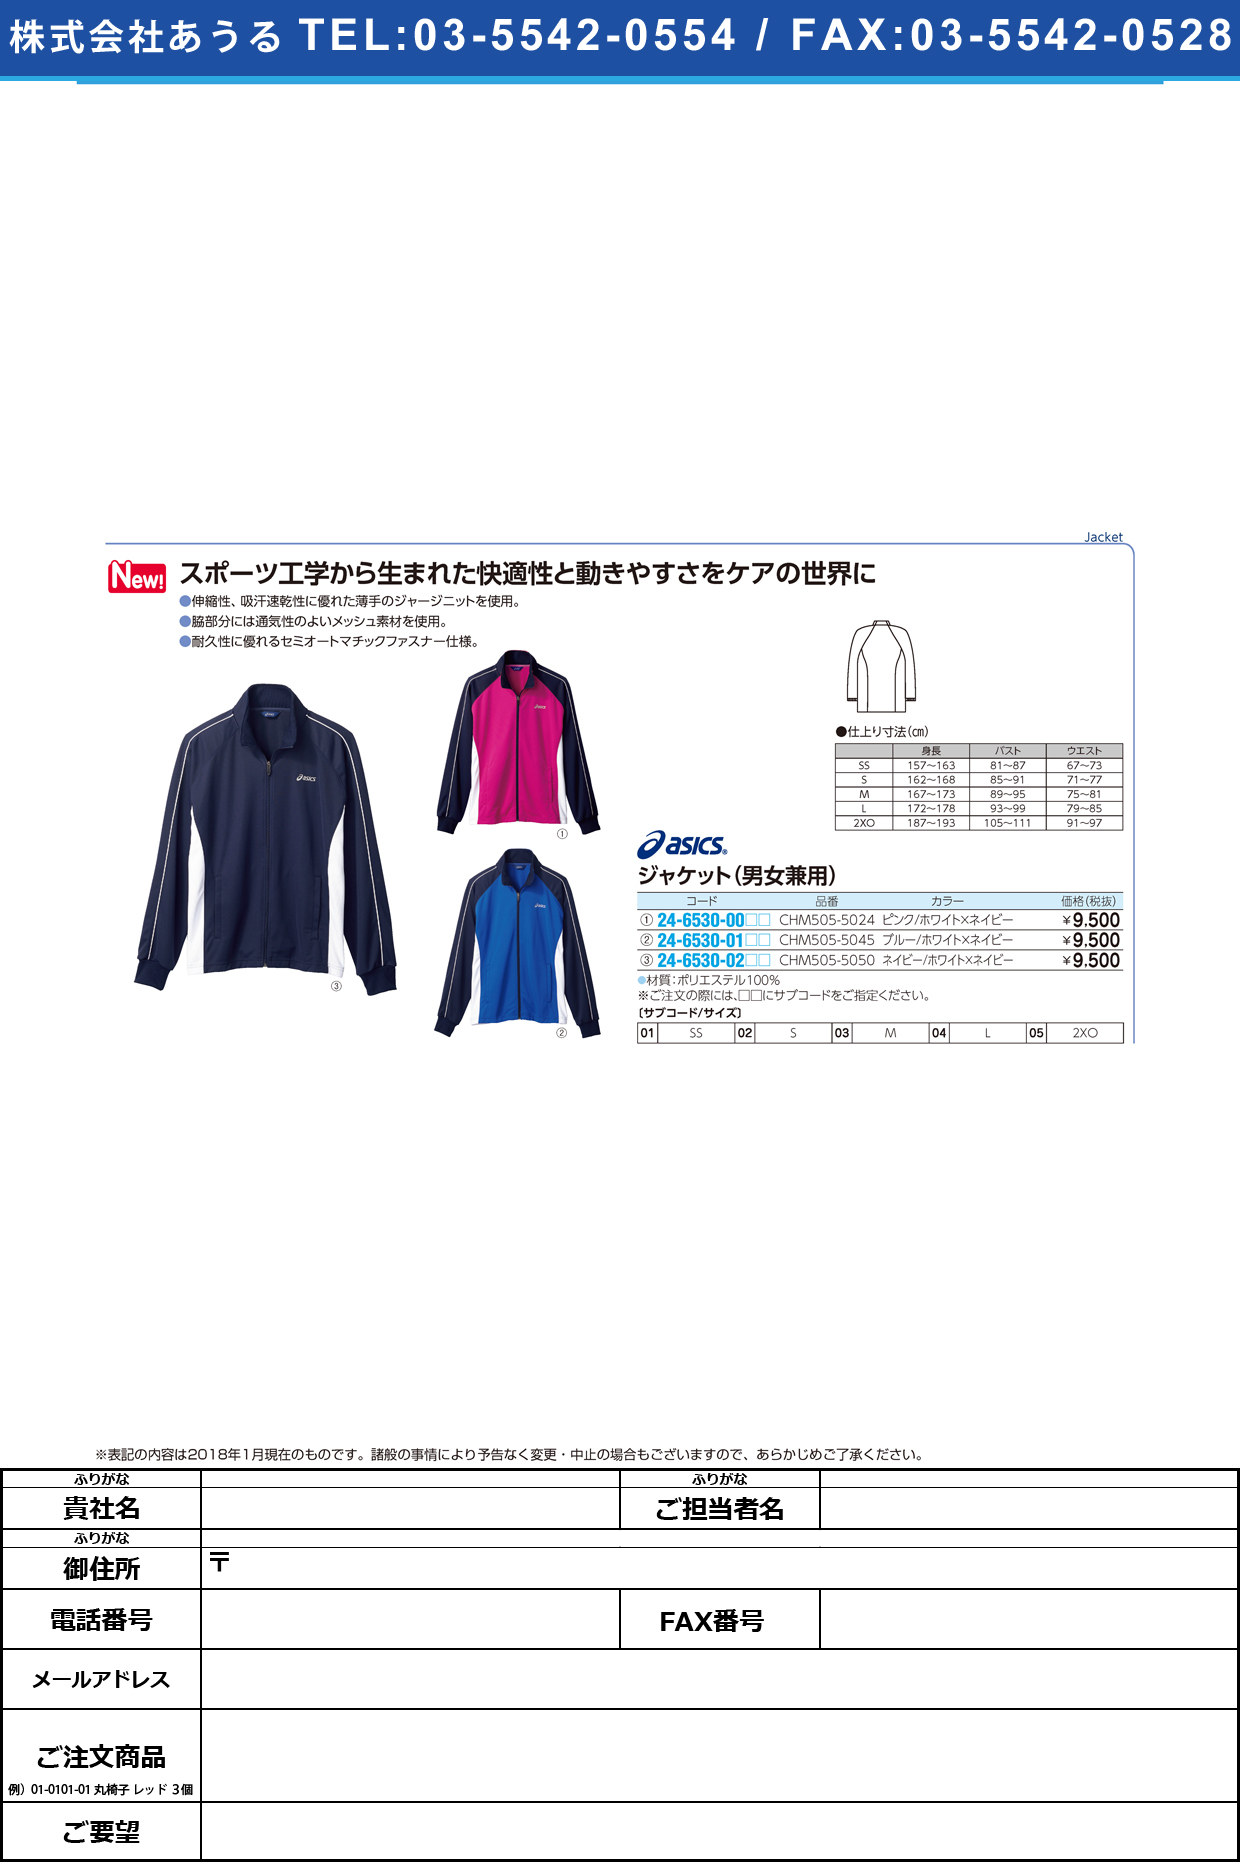 ジャケット（男女兼用） CHM505-5050(ﾈｲﾋﾞｰWXN ｼﾞｬｹｯﾄ(ﾀﾞﾝｼﾞｮｹﾝﾖｳ) ＳＳ(住商モンブラン)